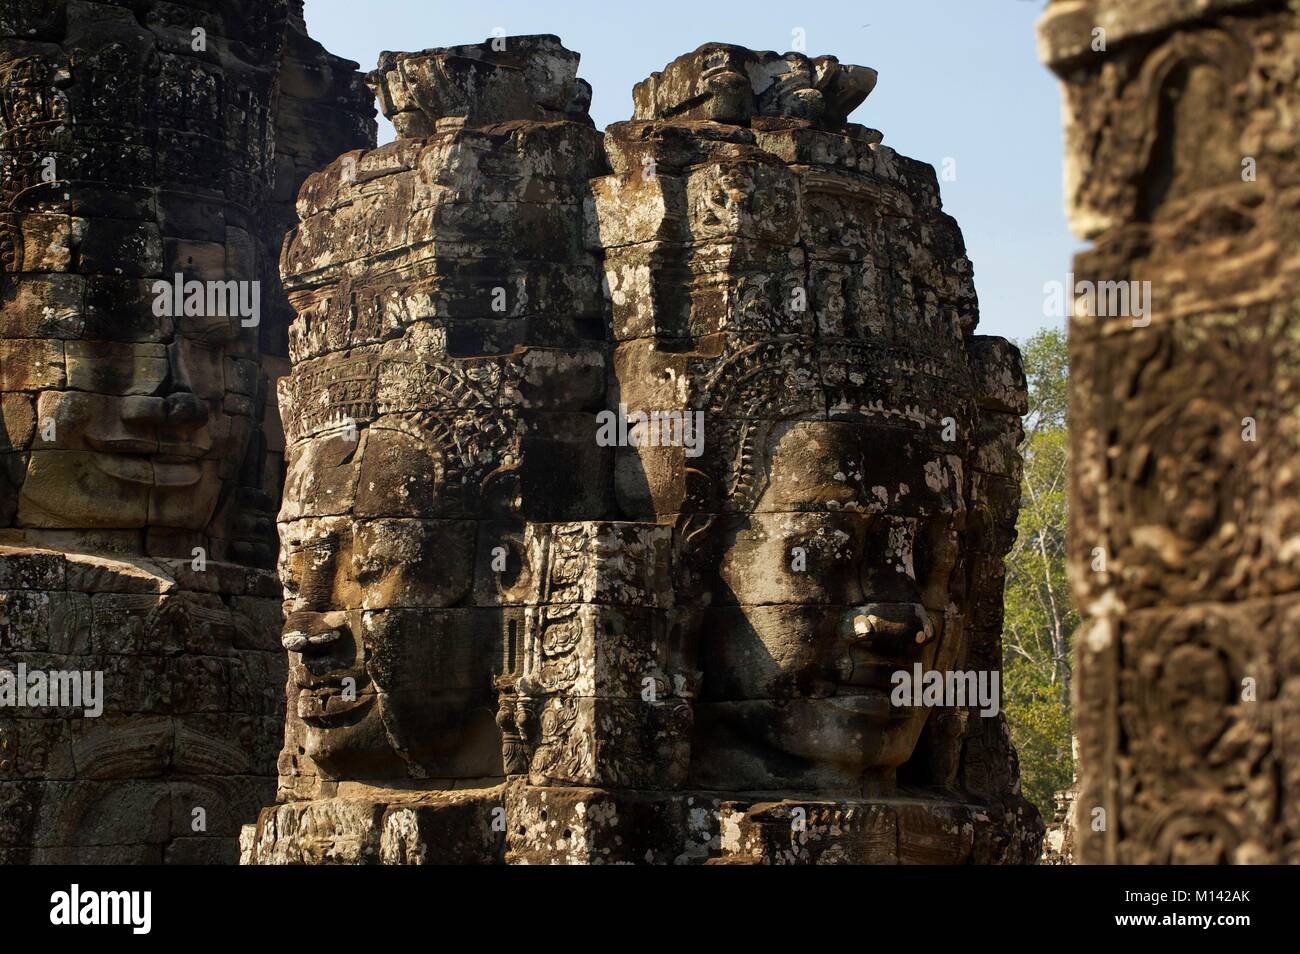 Kambodscha, Angkor, als Weltkulturerbe von der UNESCO, geschnitzten Köpfen der Bodhisattva die Komposition der Bayon, die wichtigsten Tempel der alten Khmer Stadt Angkor Thom Stockfoto